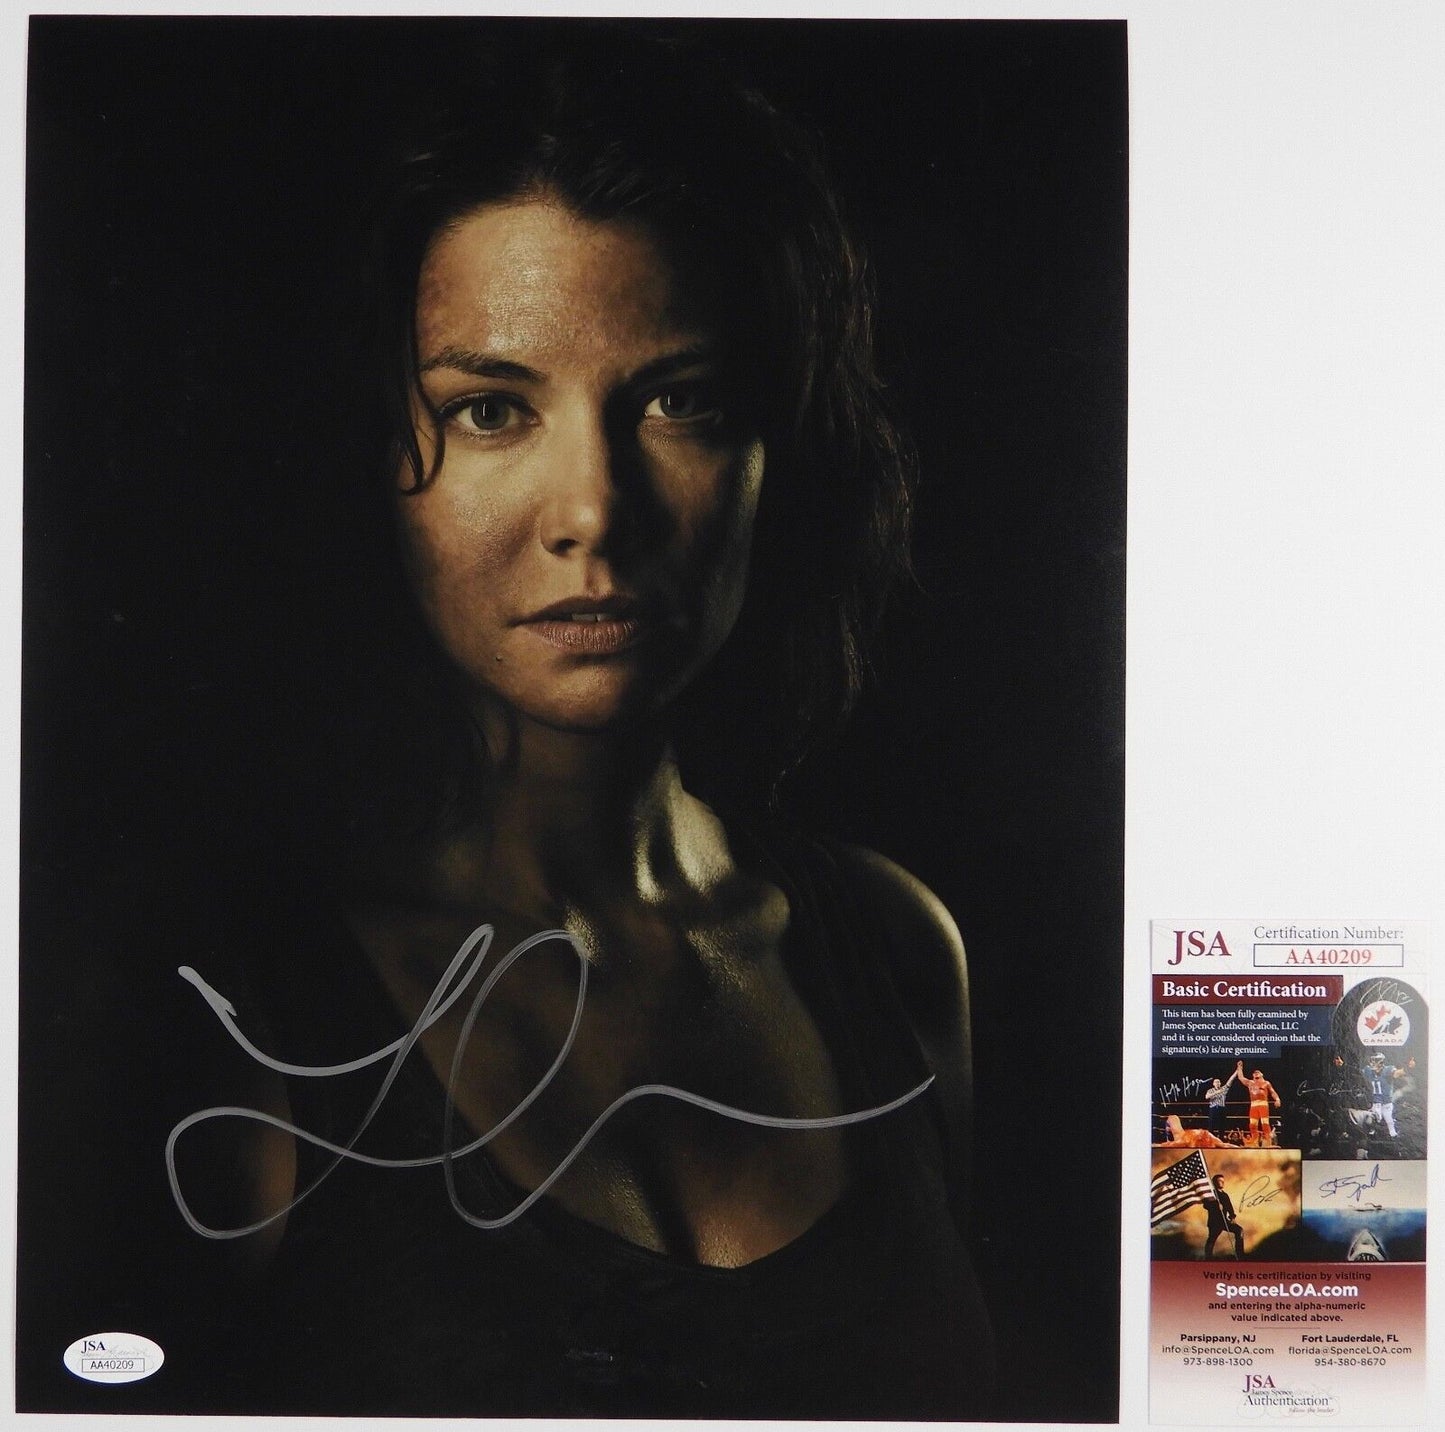 Lauren Cohan Maggie The Walking Dead Autograph Signed Photo JSA COA 11 x 14